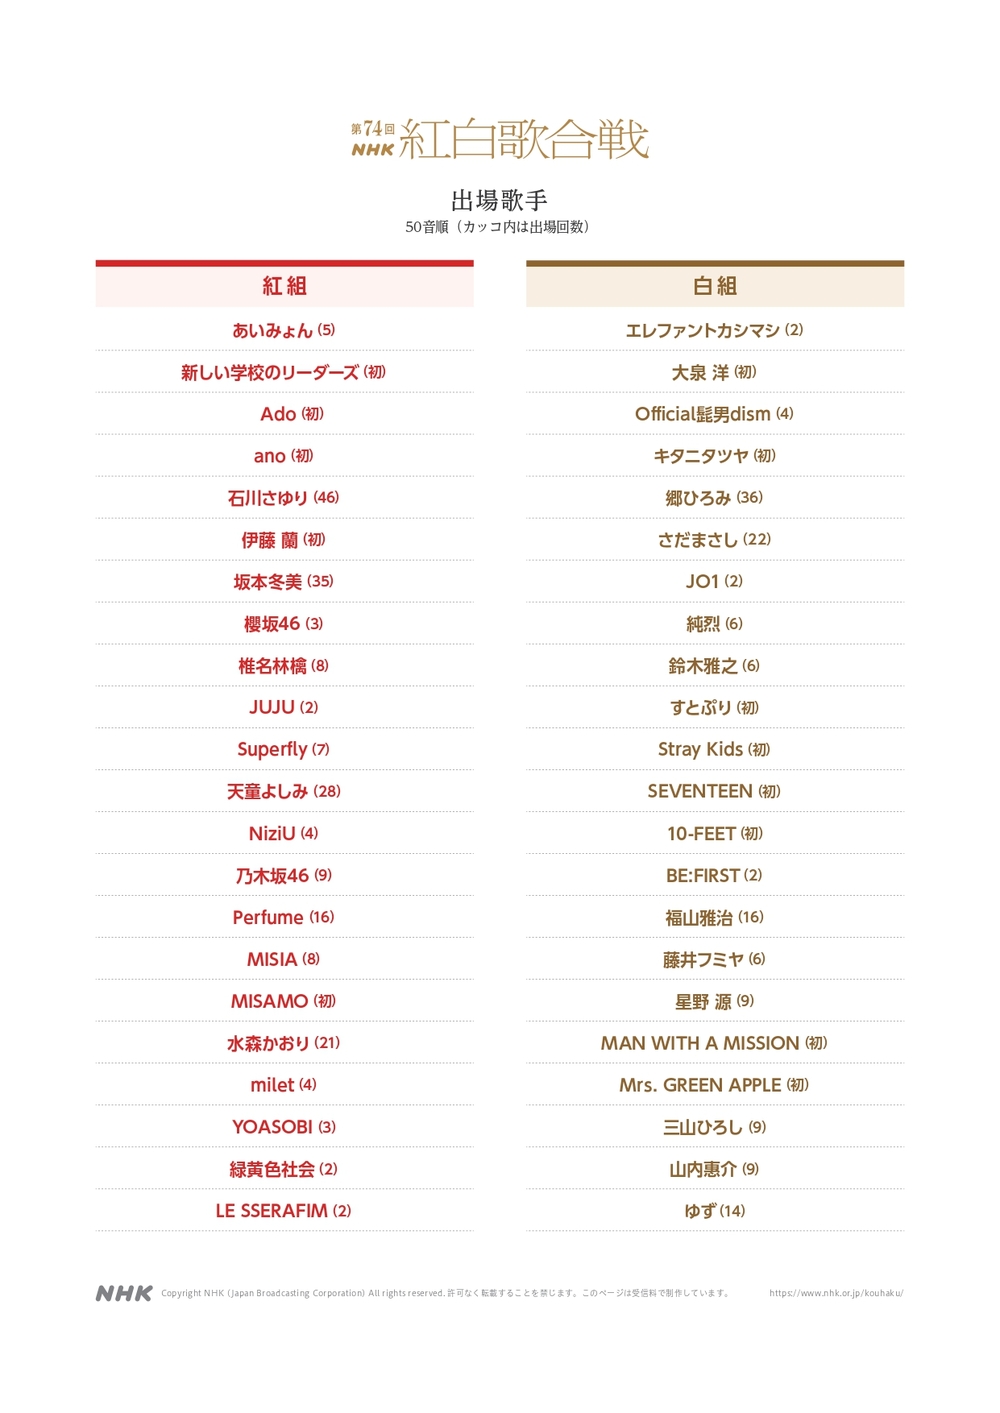 第 74 屆紅白歌合戰出場歌手名單 / 圖片翻攝自 NHK 官網